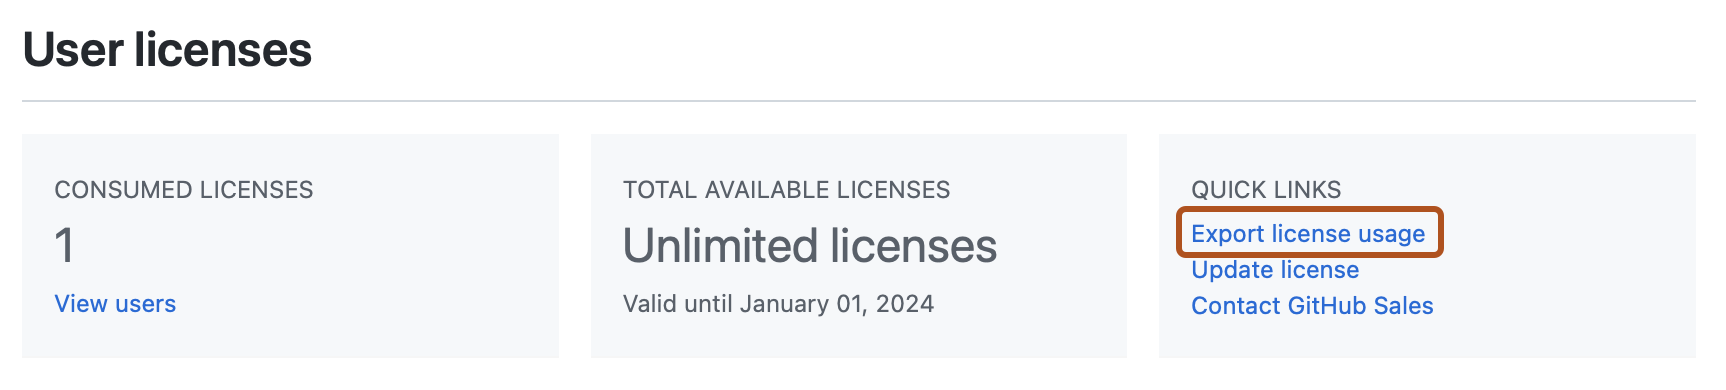 “许可证”页的“用户许可证”部分的屏幕截图。 标记有“导出许可使用情况”的链接以深橙色标出。